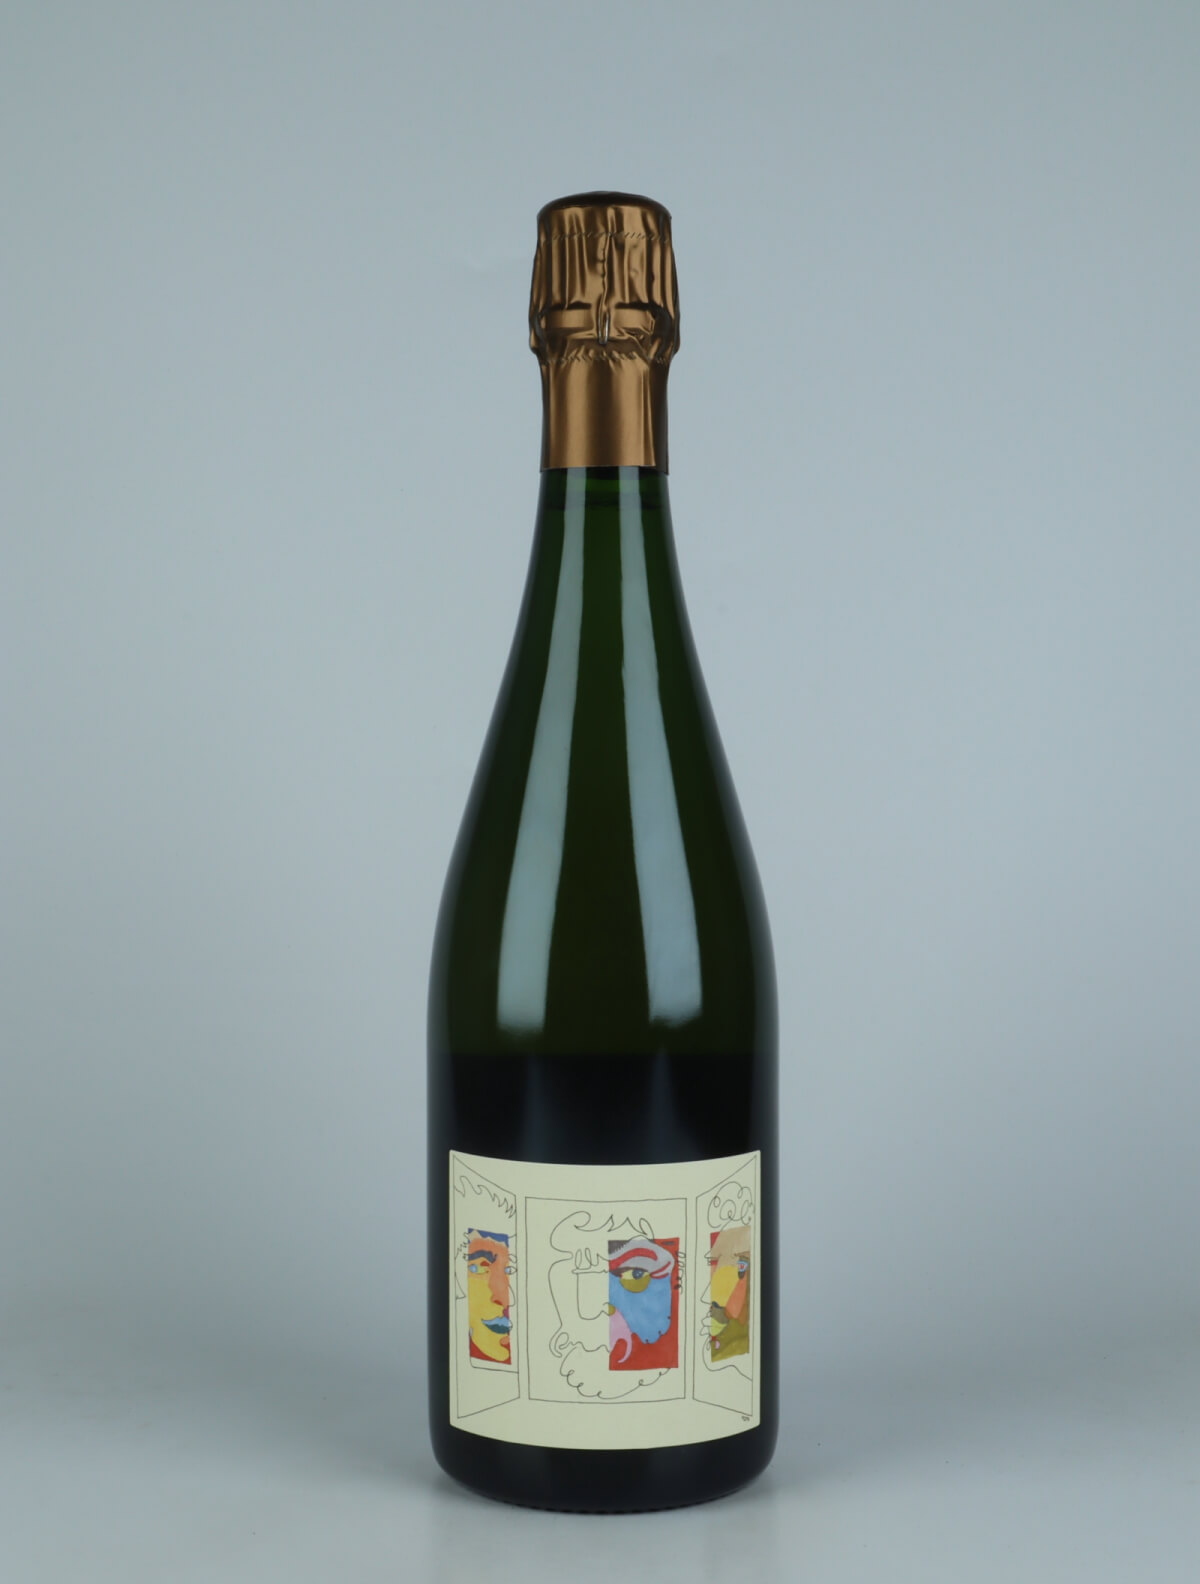 En flaske N.V. Triptyque (18/19) - Brut Nature Mousserende fra Stroebel, Champagne i Frankrig